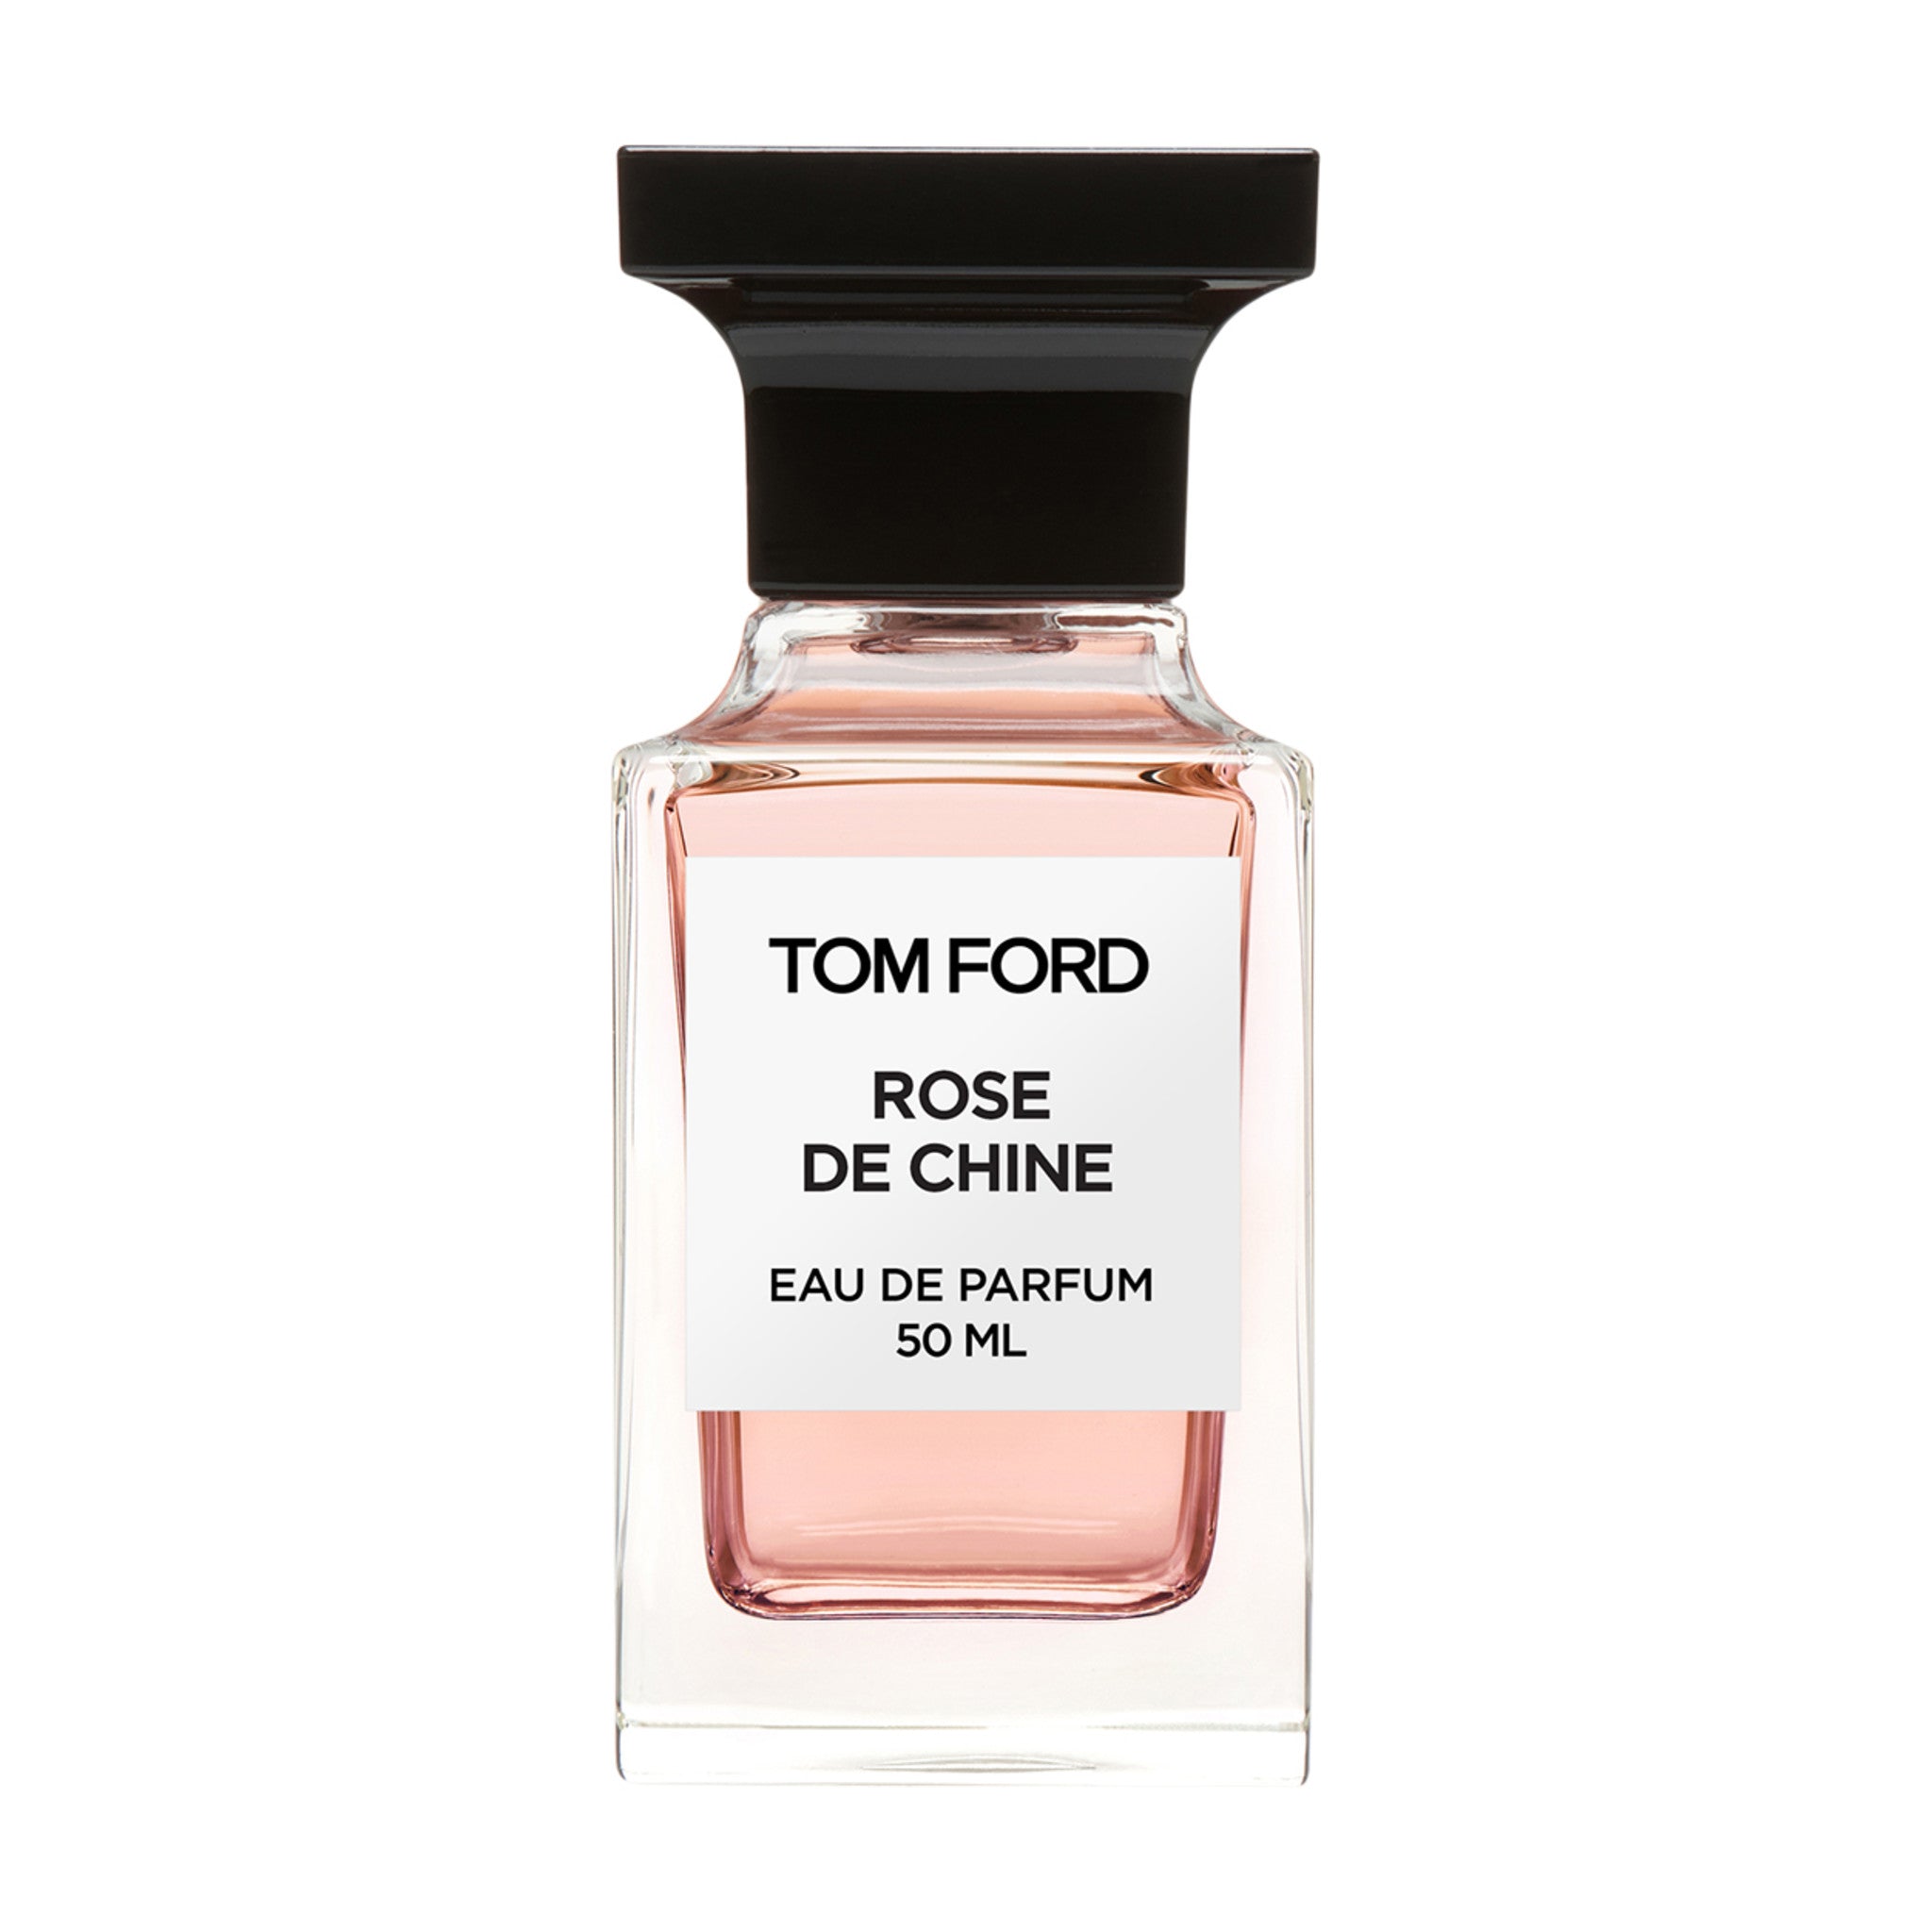 Tom Ford Rose De Chine 1.7 oz | 50 ml main image.